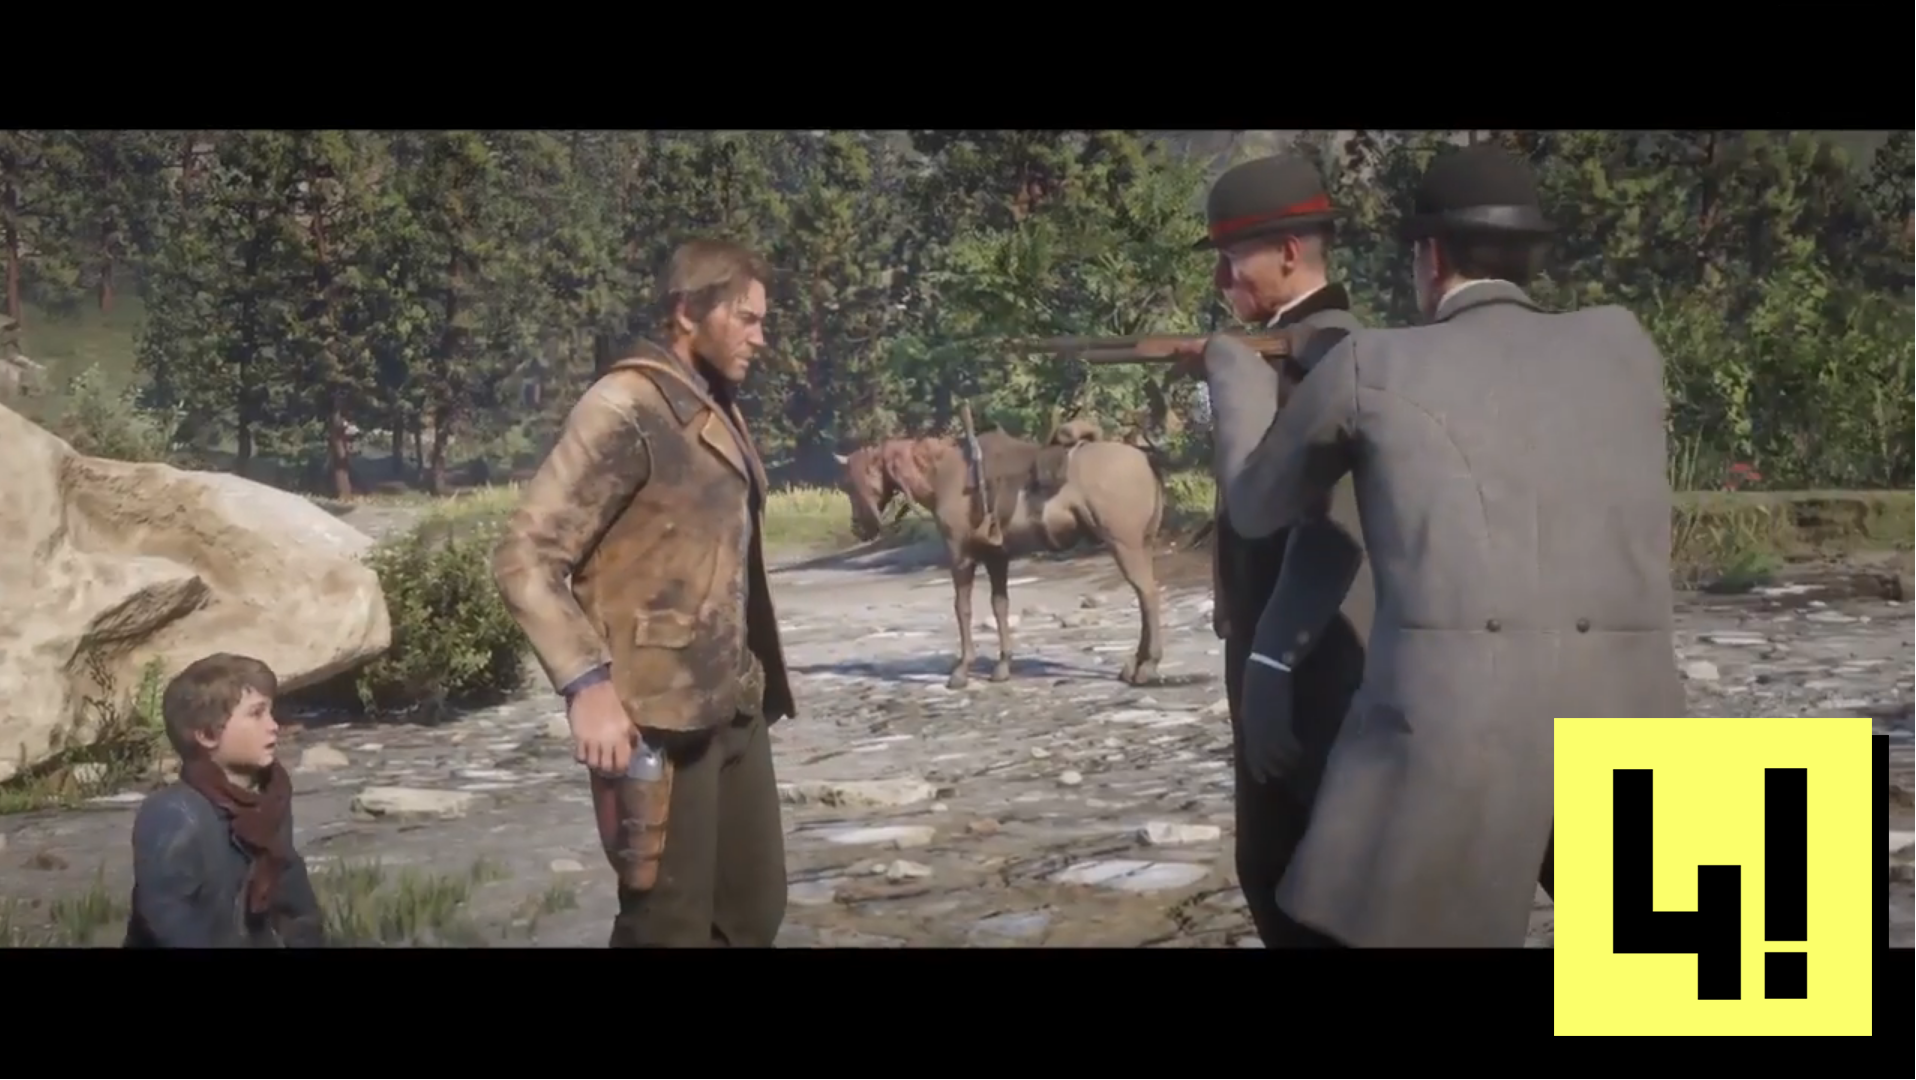 A modern kultúra csúcsterméke most éppen egy western videojáték, ahol a lovak heréit is leprogramozták